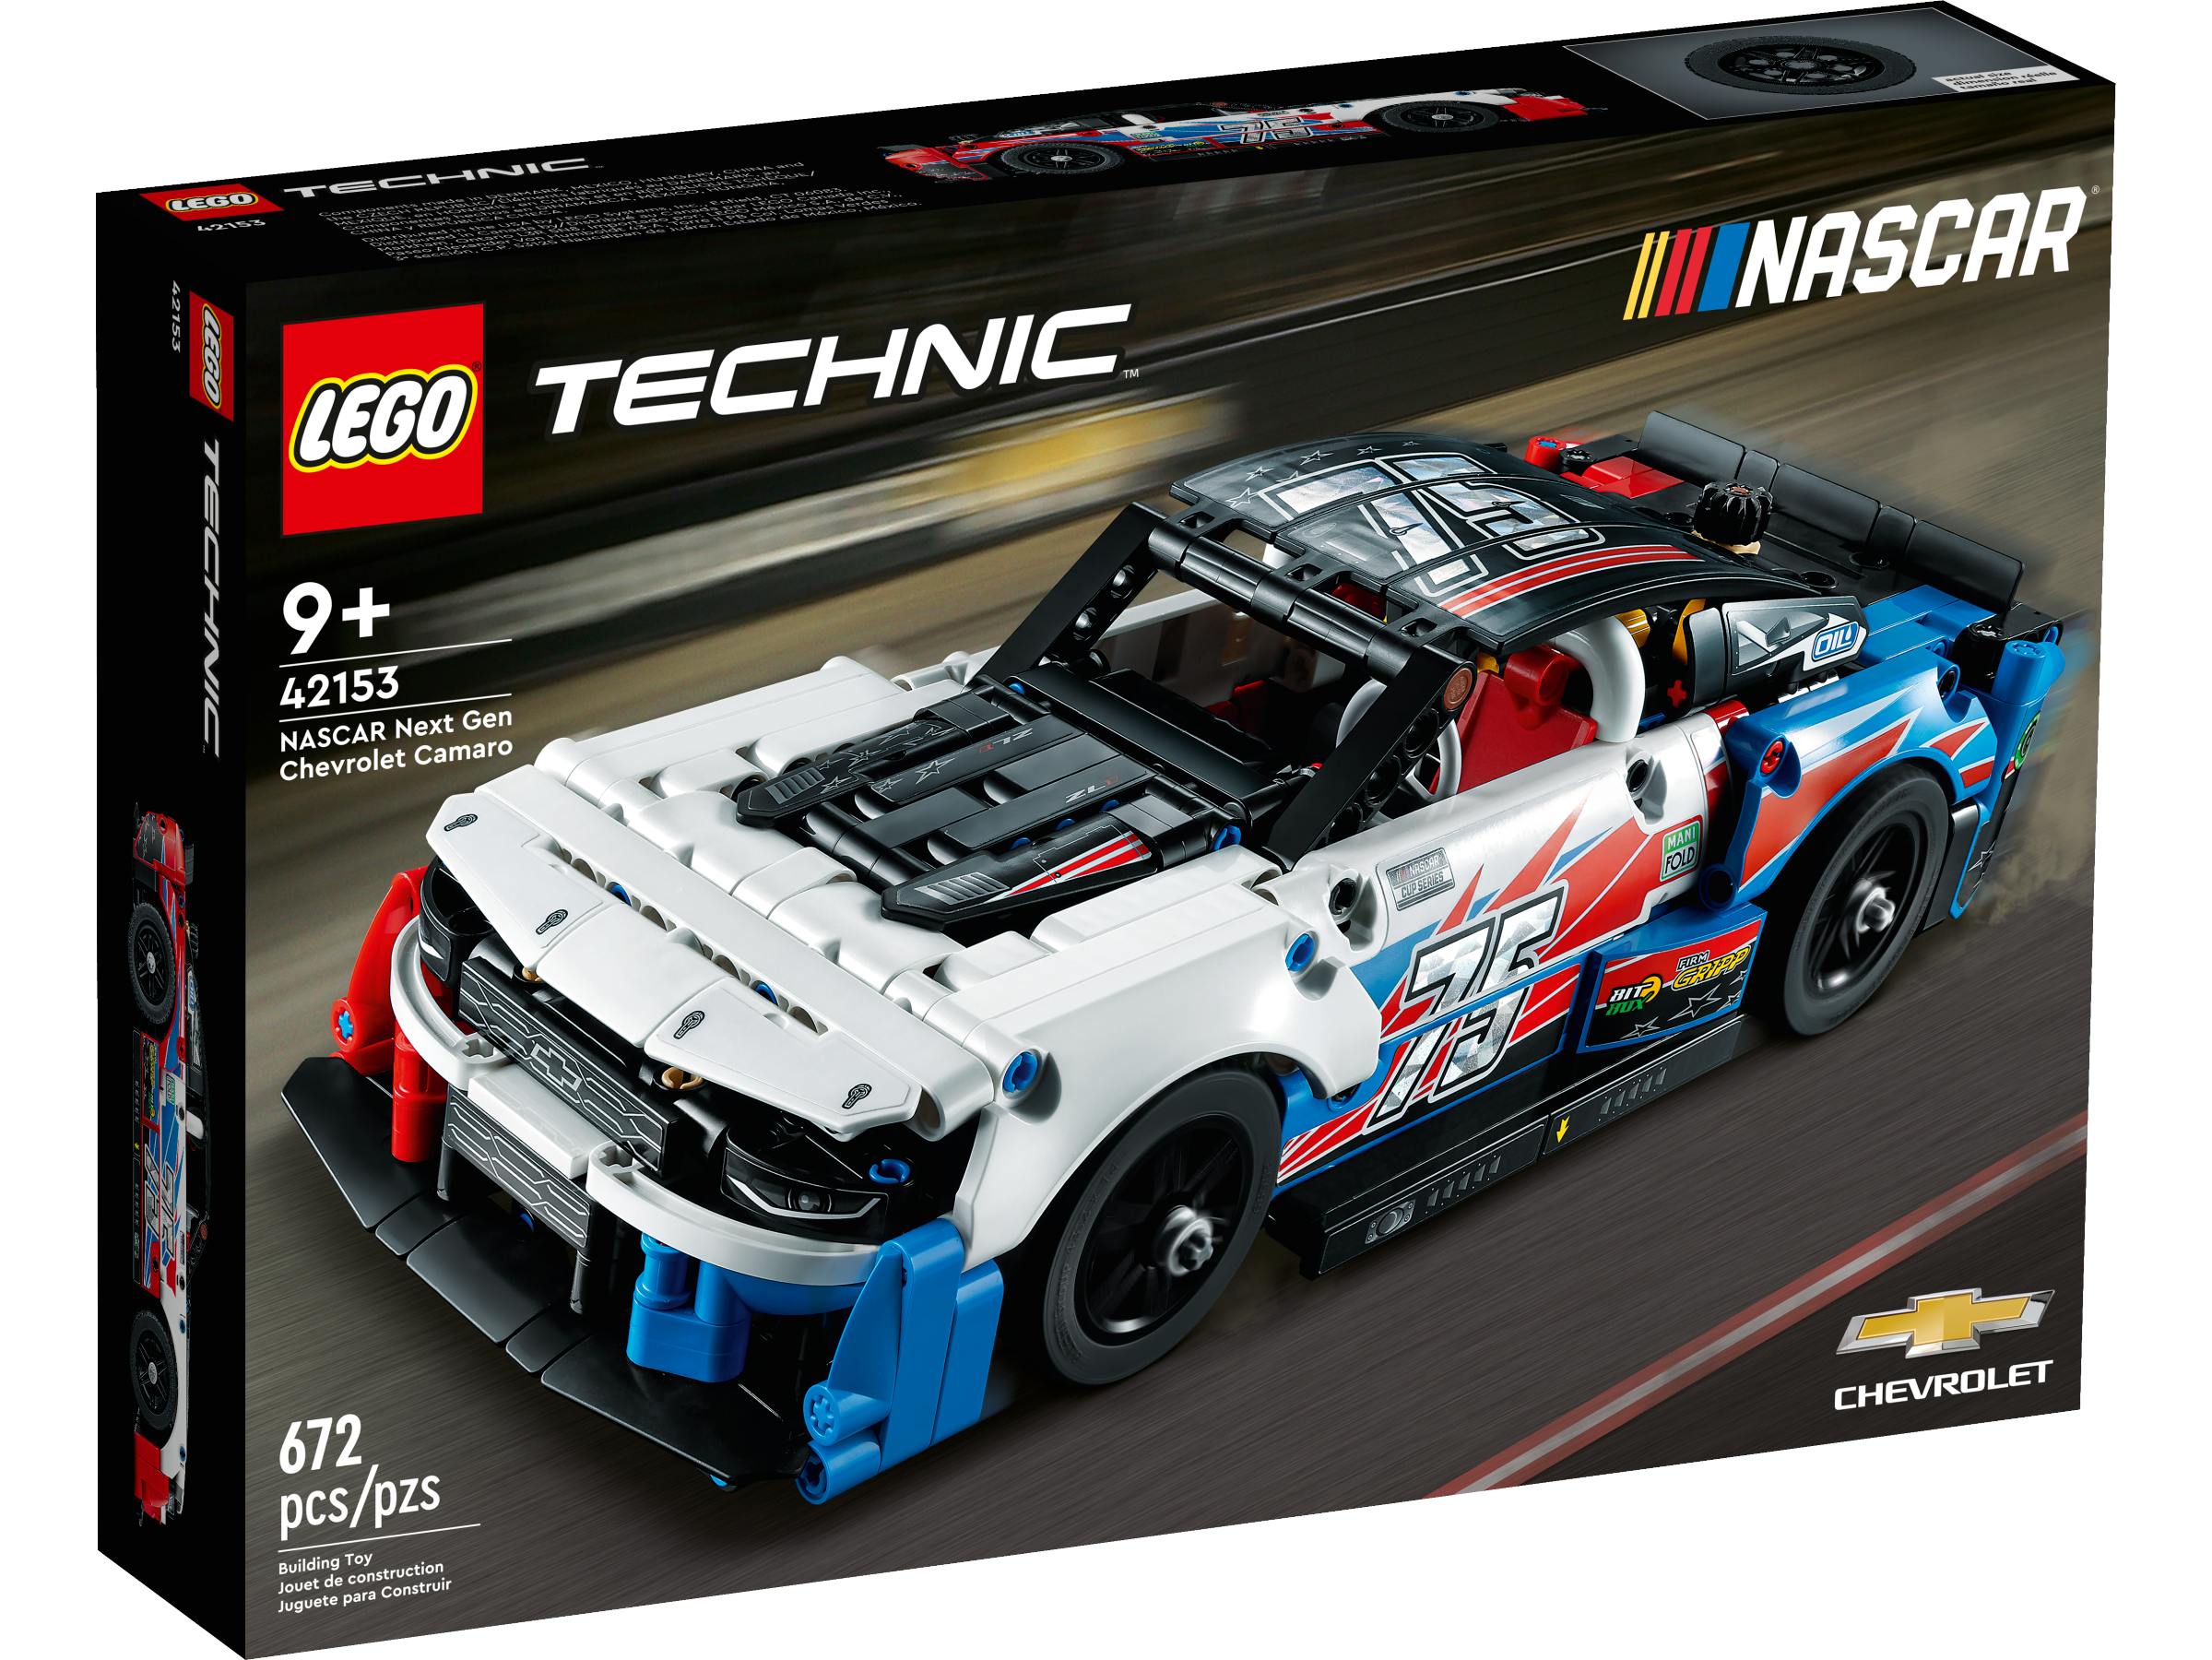 Buitenboordmotor twee weken Persoonlijk LEGO® Technic™ Toys and Collectibles | Official LEGO® Shop US